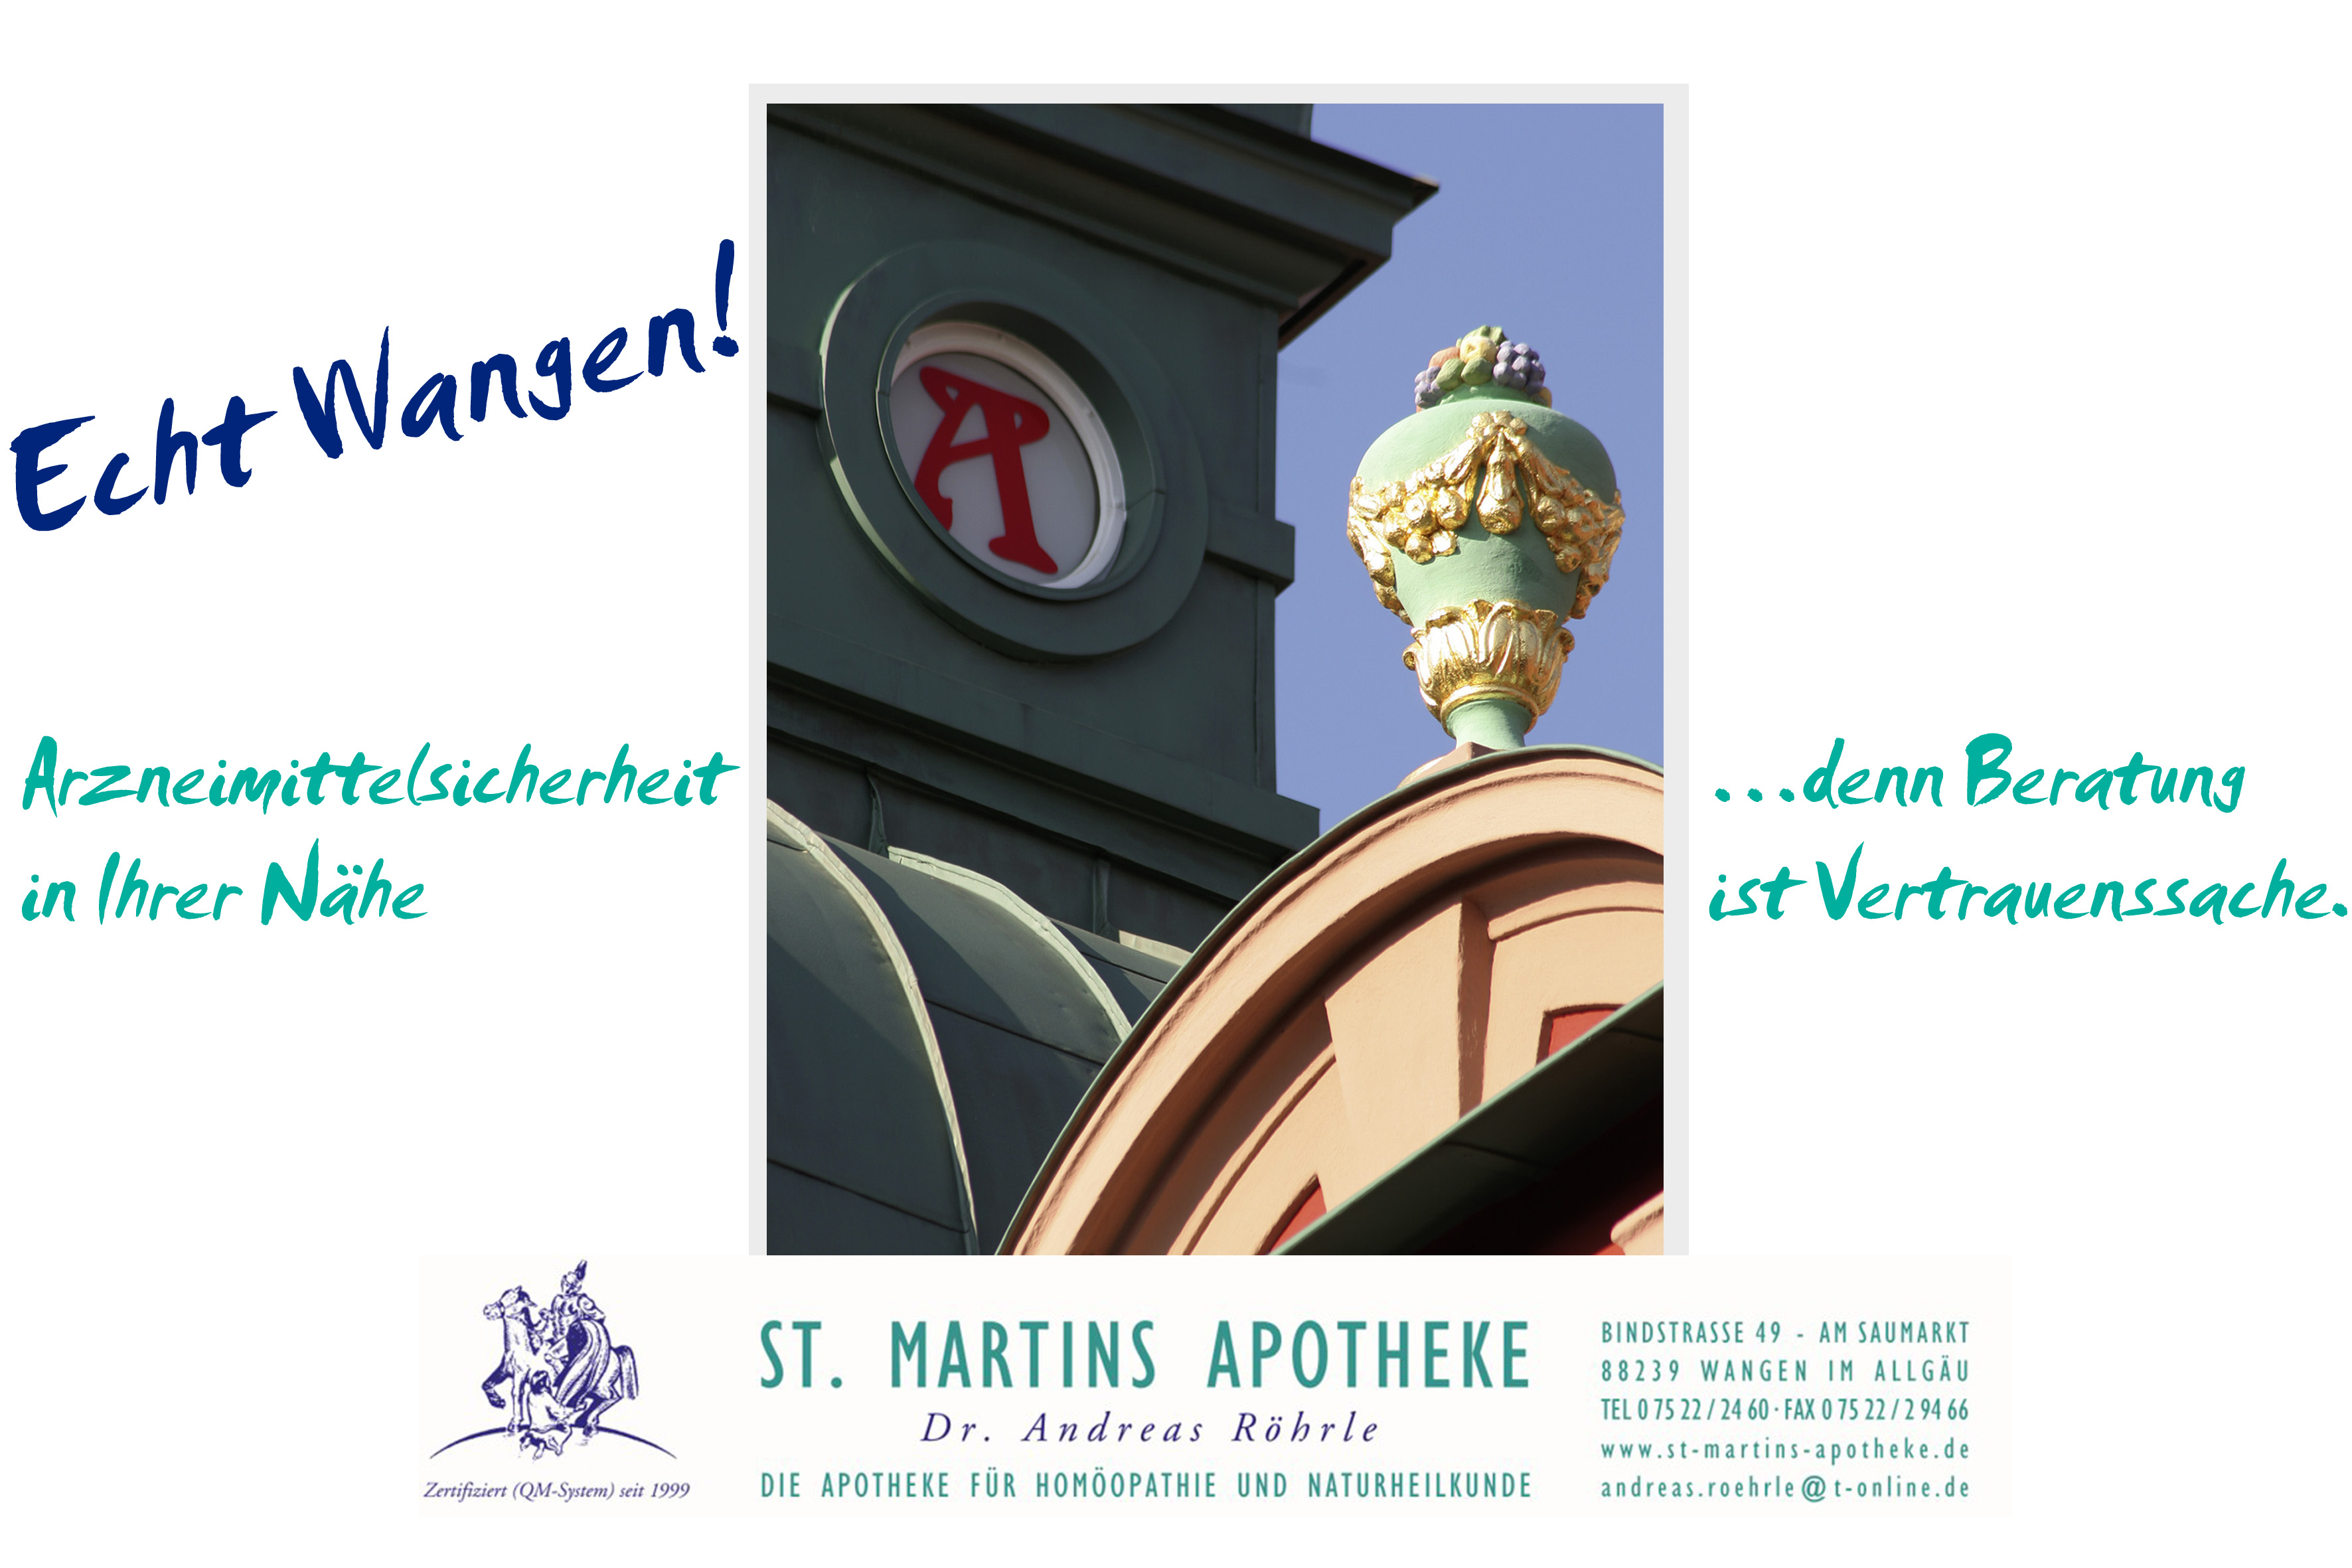 Wir in Wangen: St. Martins Apotheke in Wangen im Allgäu, Bild mit Text